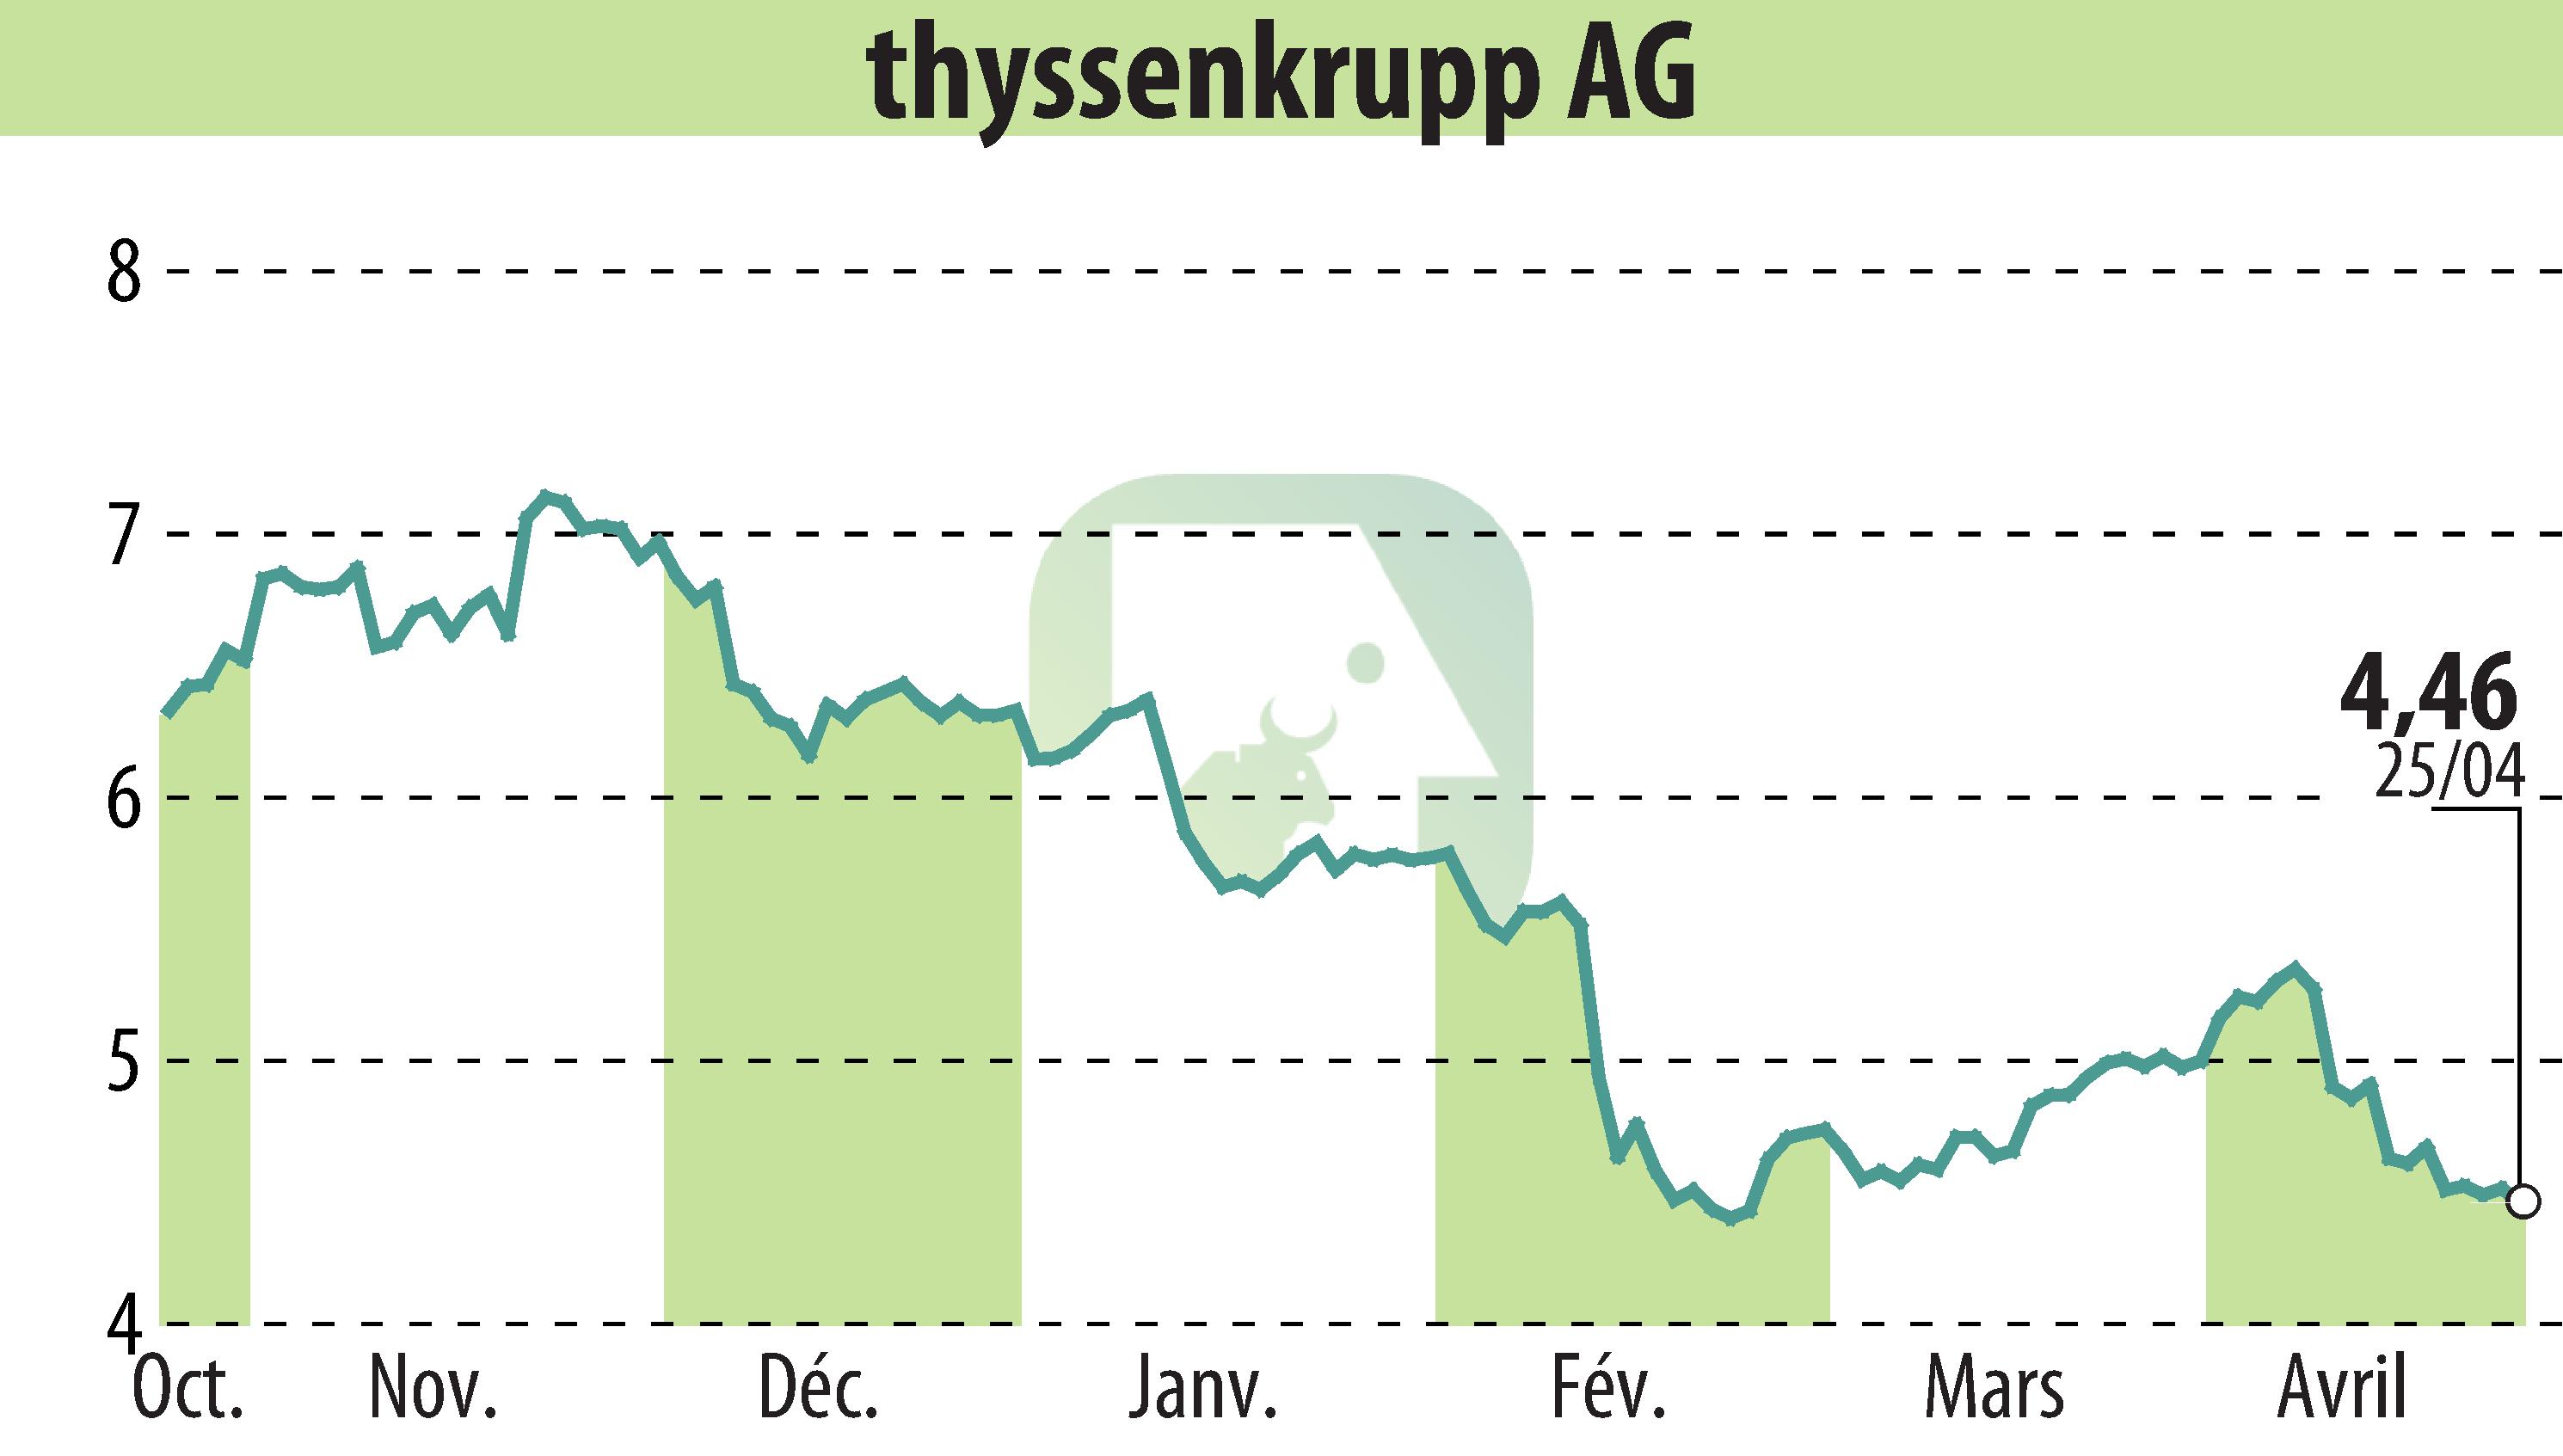 Graphique de l'évolution du cours de l'action ThyssenKrupp AG (EBR:TKA).